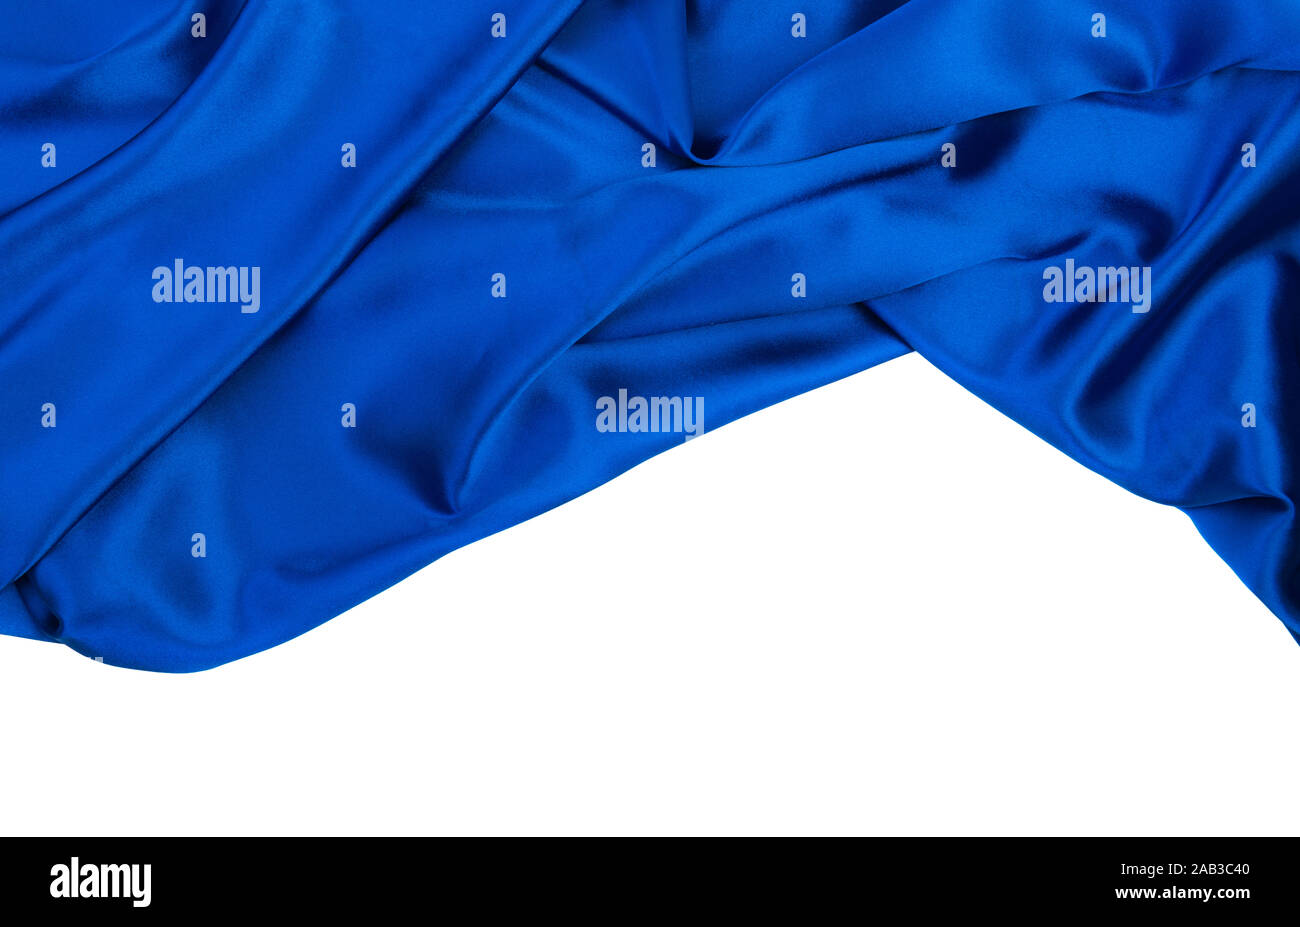 Abstrakt blau hintergrund Seidentuch Stockfoto